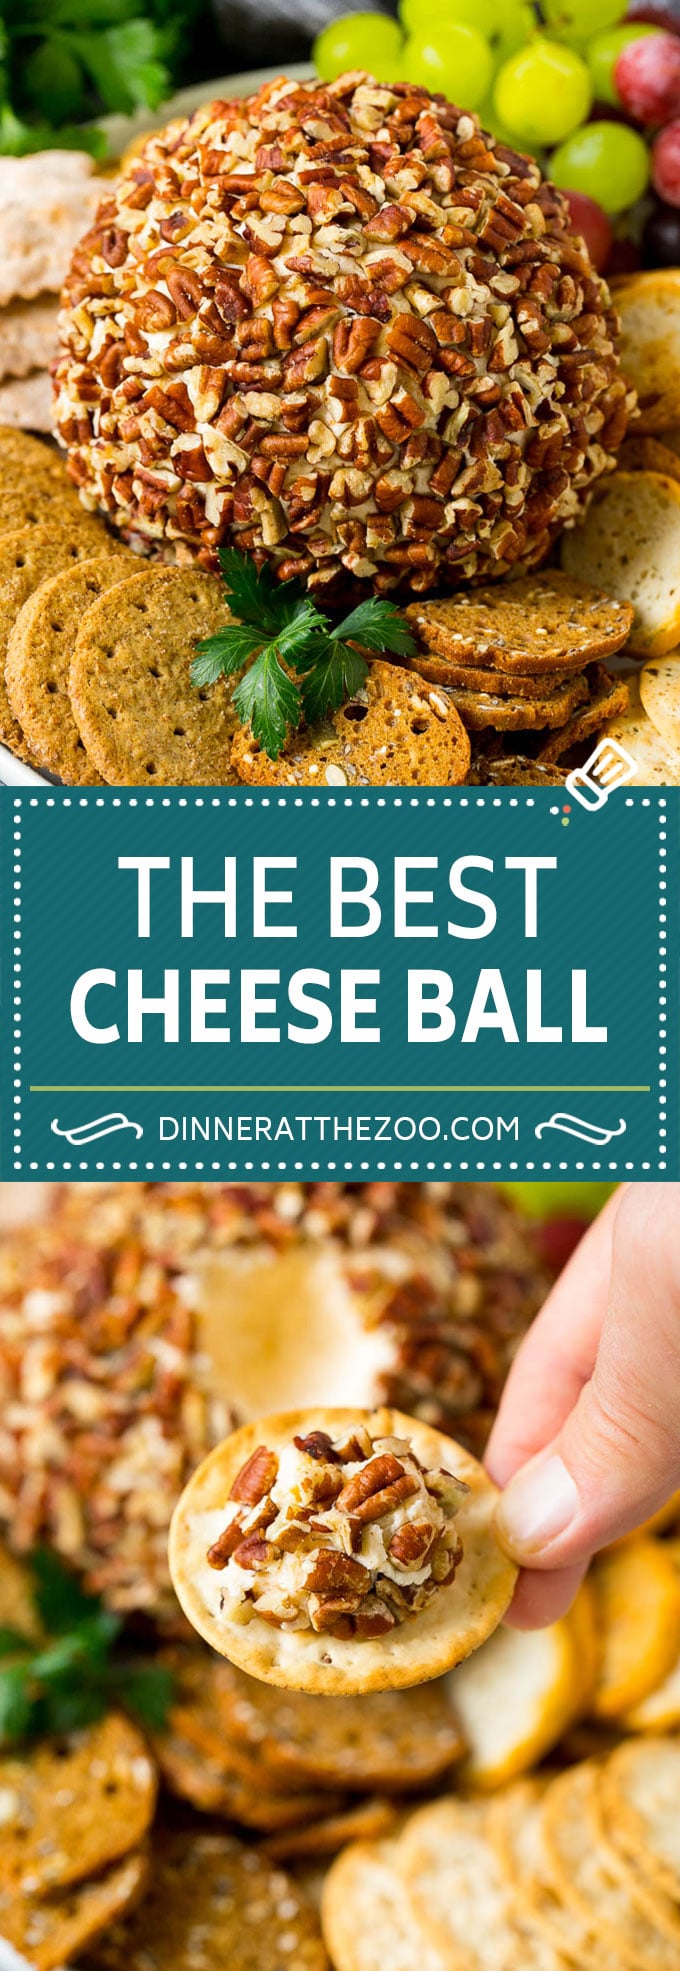 Receta de bola de queso # queso # bola de queso # pacanas # antipasto # bocadillo #keto # lowcarb #dinneratthezoo